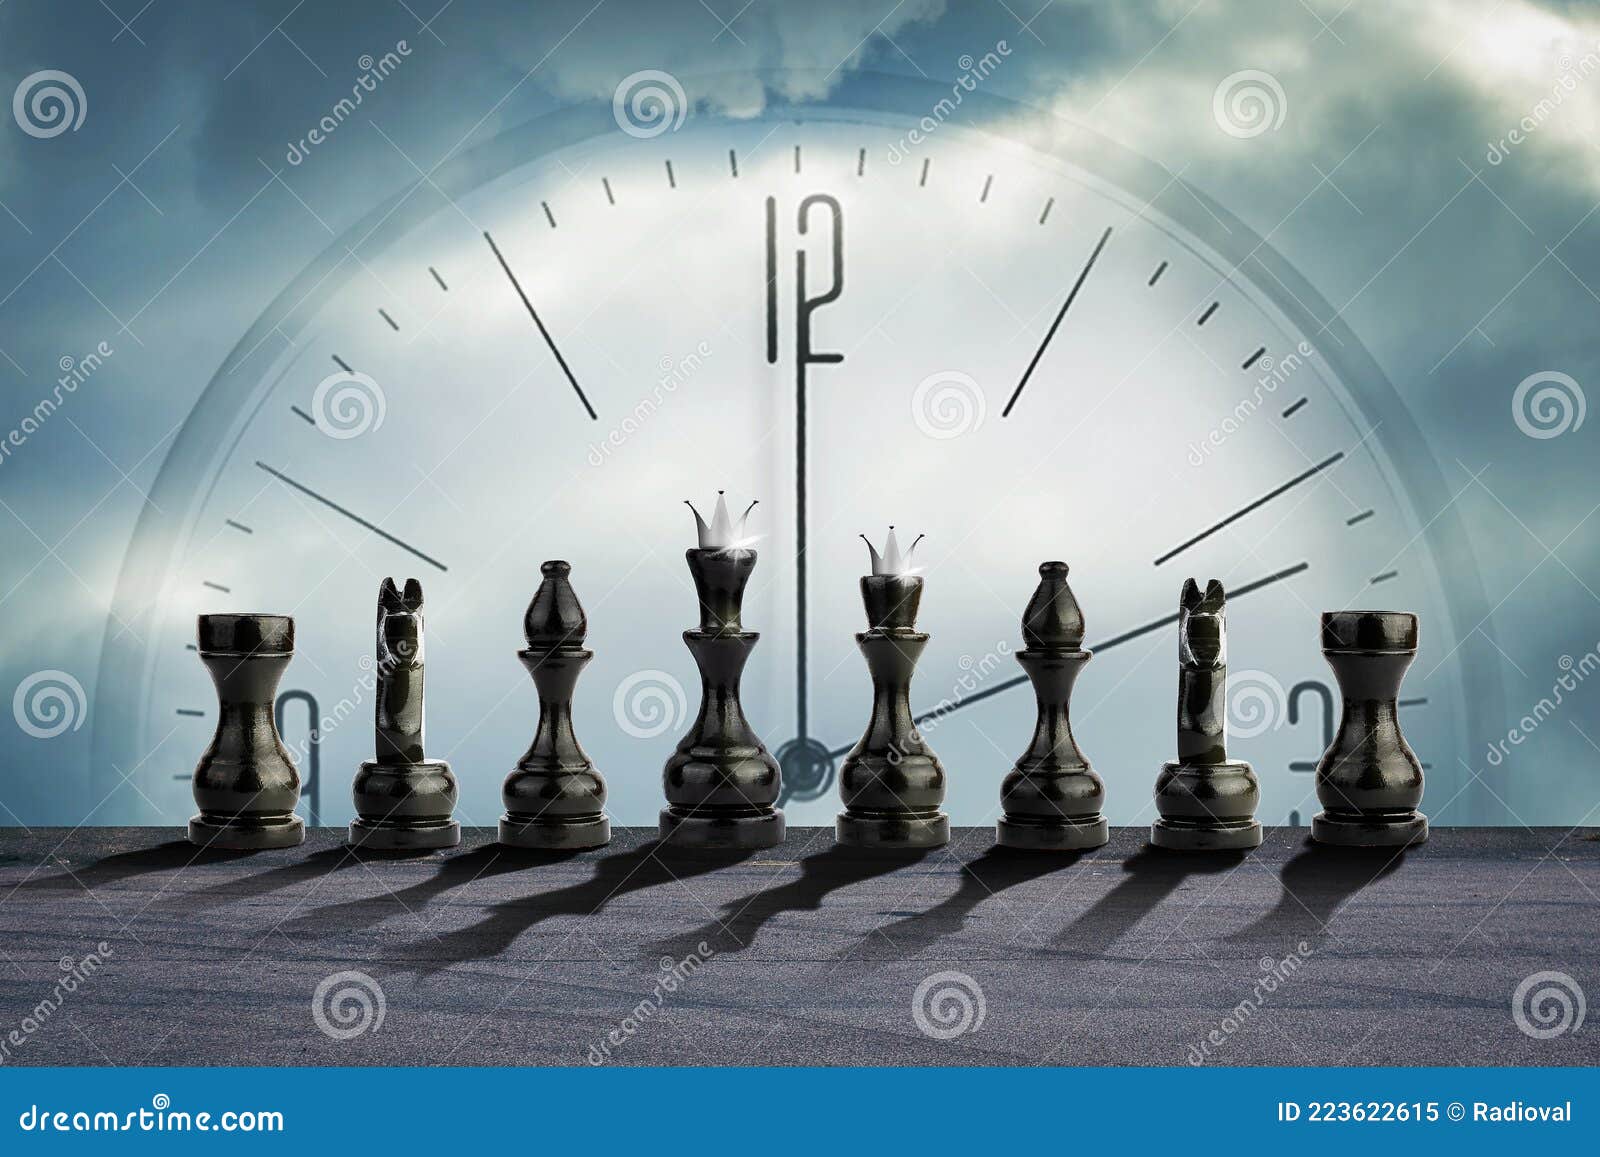 definir o esboço do relógio de xadrez isolado. relógios retrô